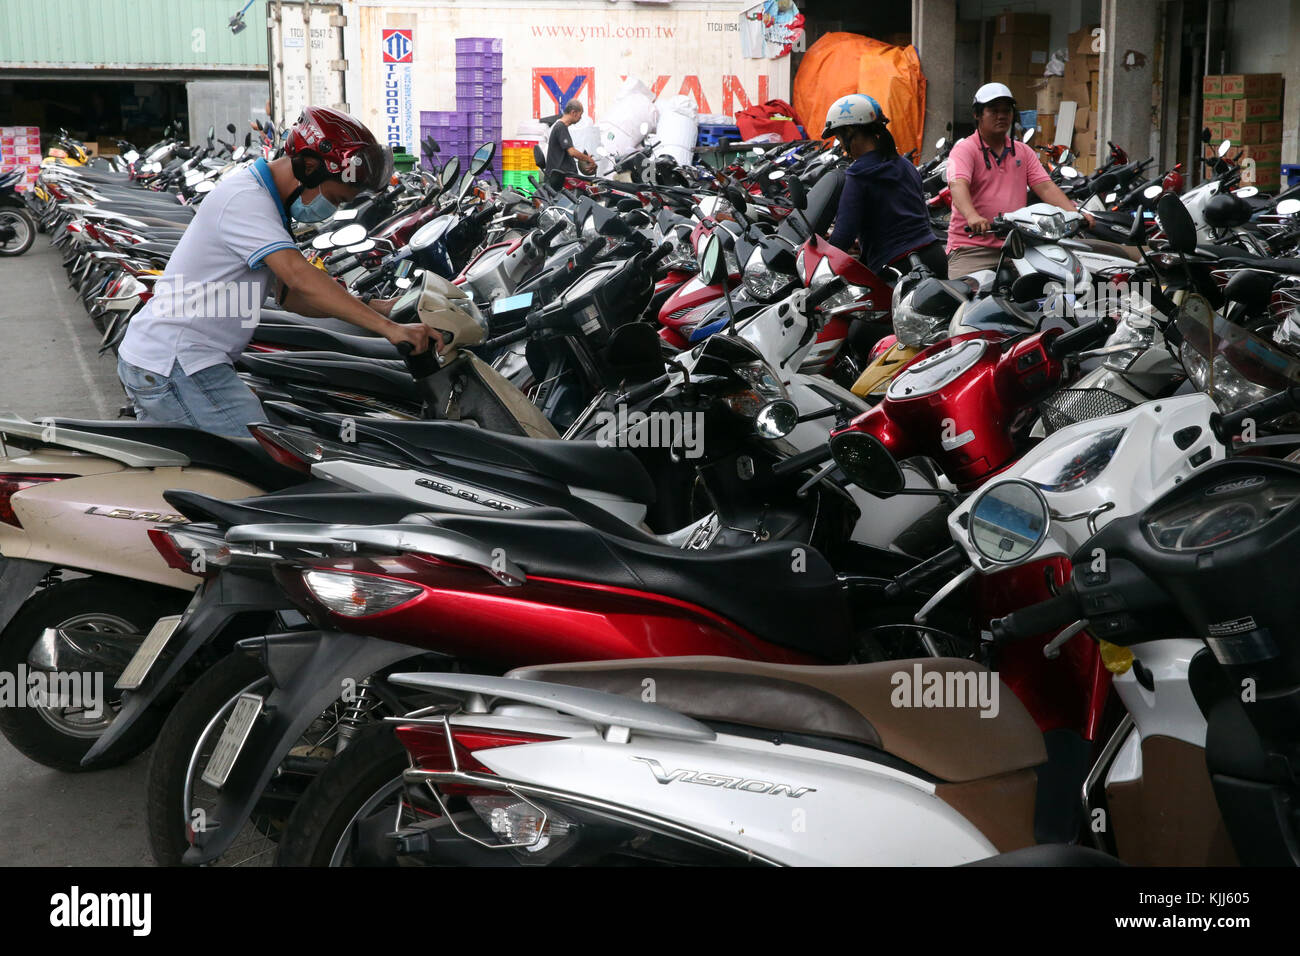 Les scooters et motos dans un parking à Ho Chi Minh ville. Ho Chi Minh Ville. Le Vietnam. Banque D'Images